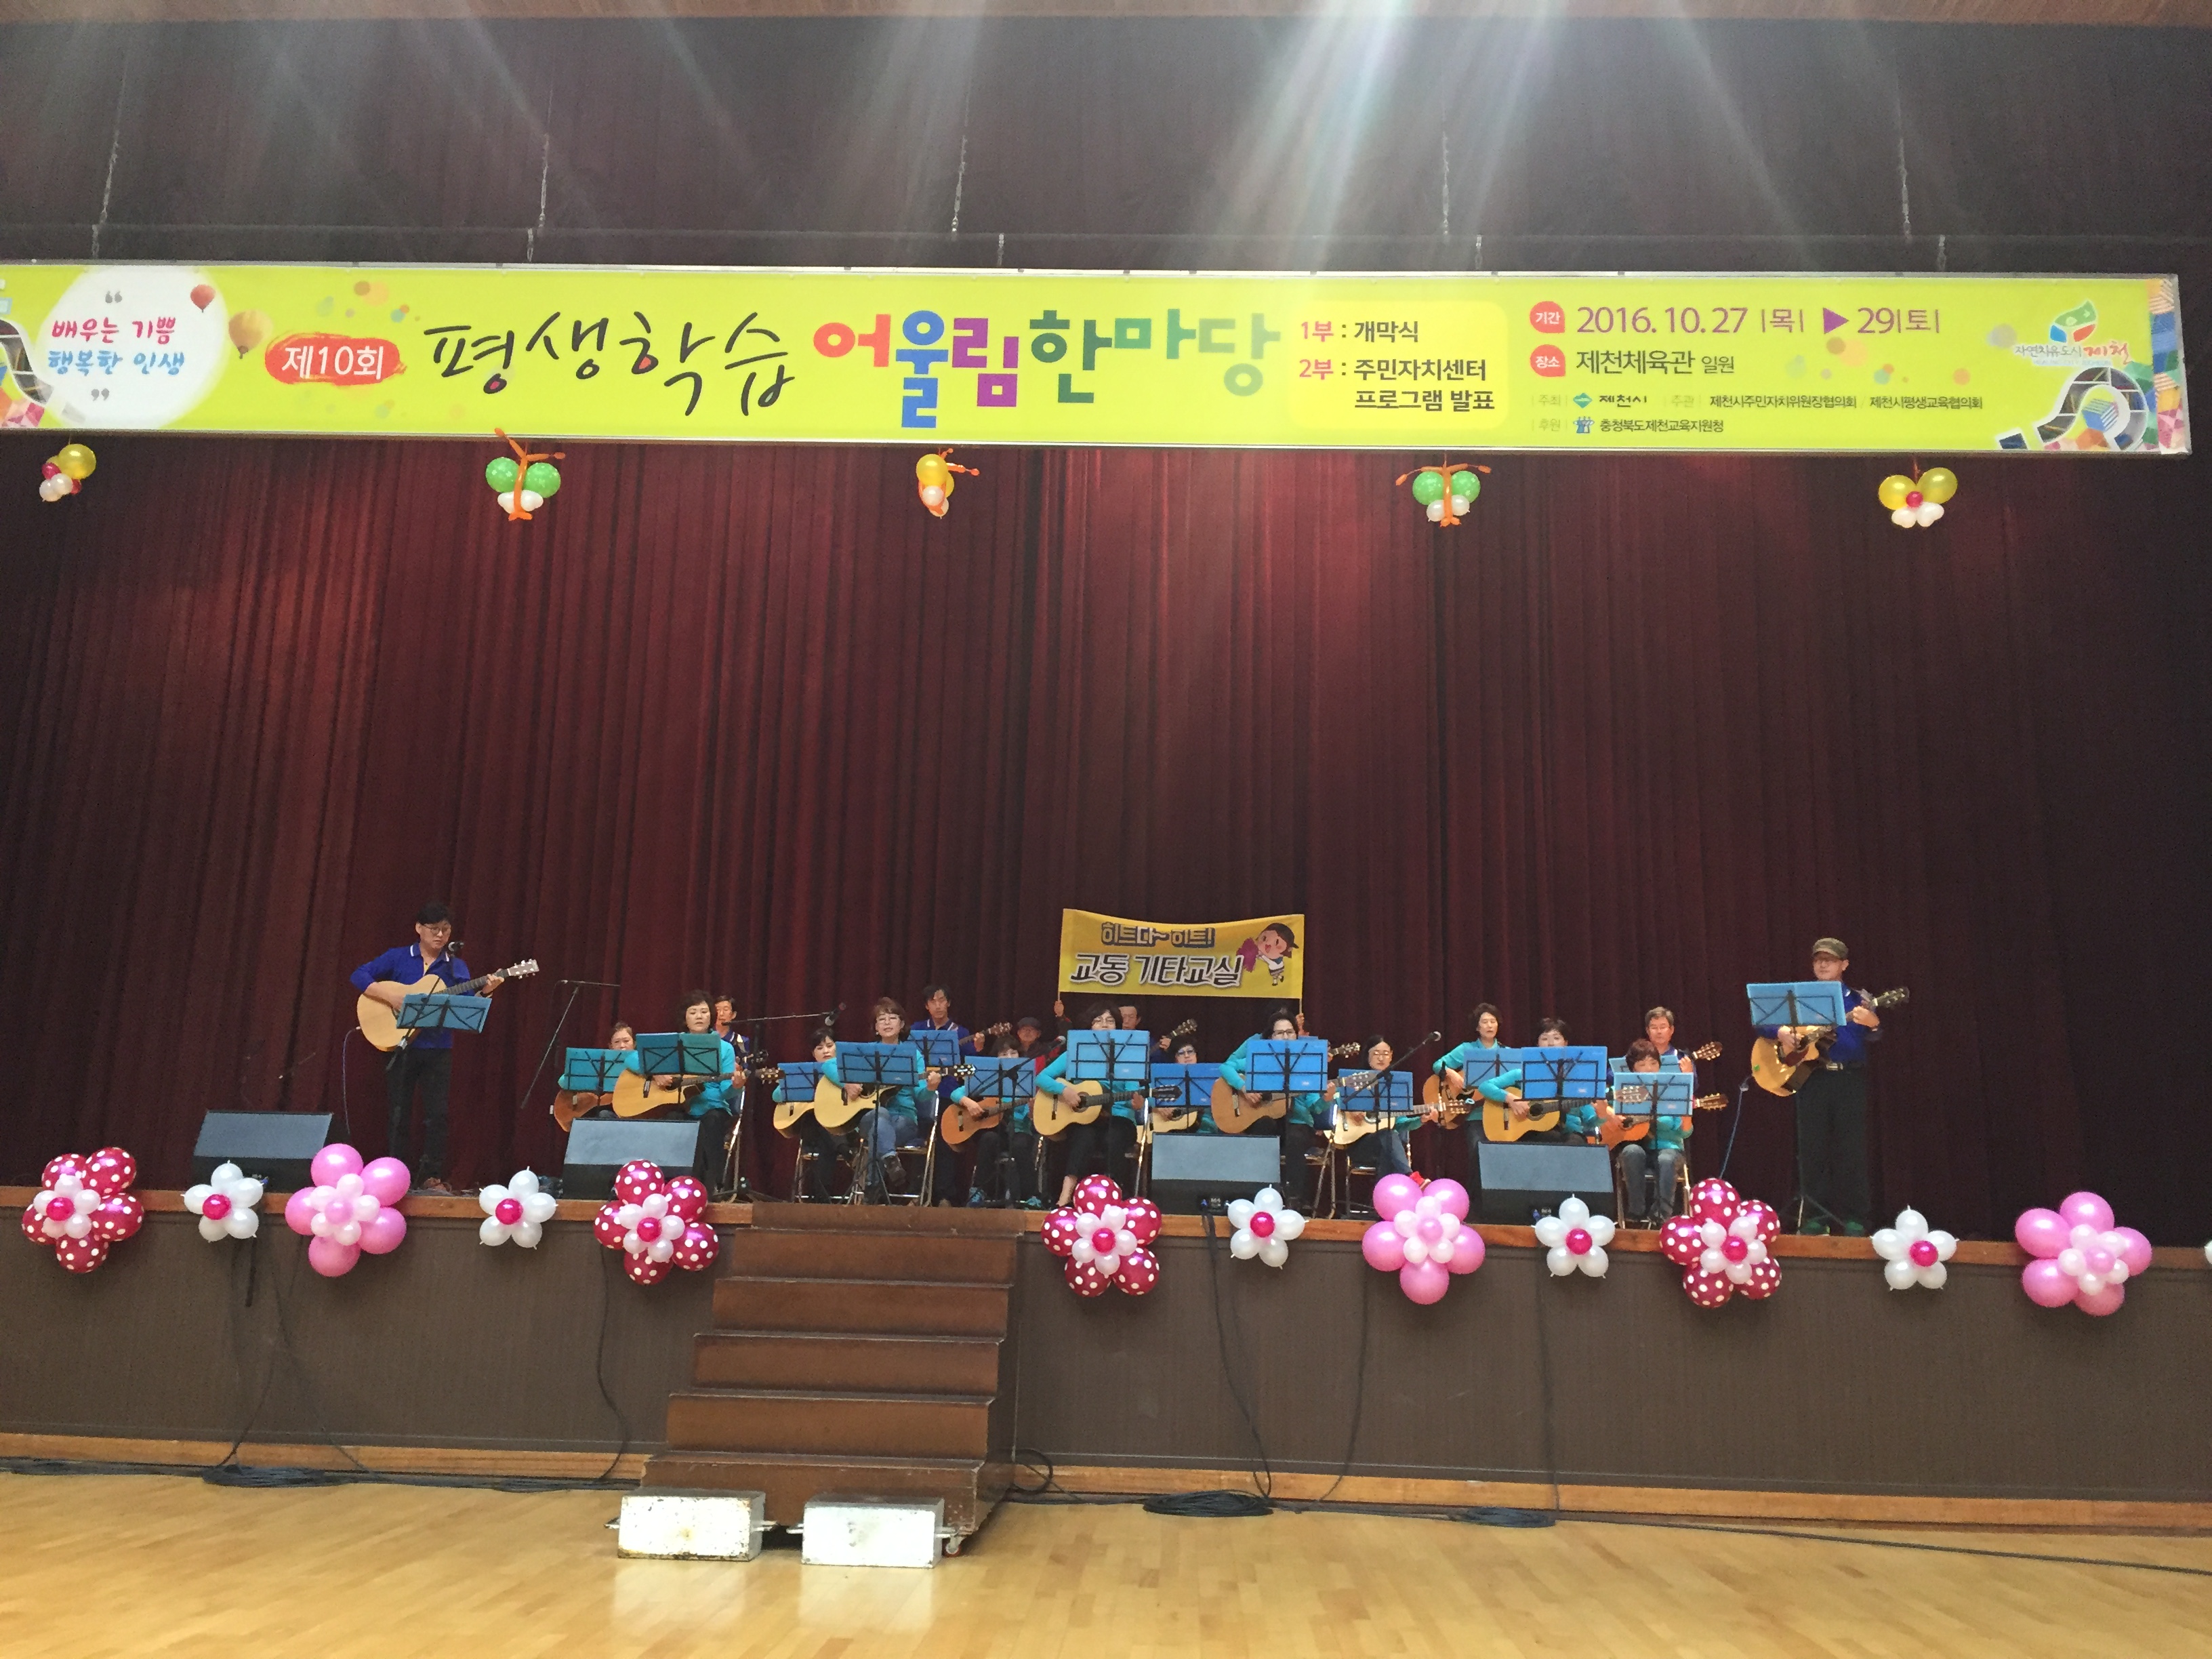 2016 평생학습 어울림마당, 교동 기타교실 참여 이미지 1